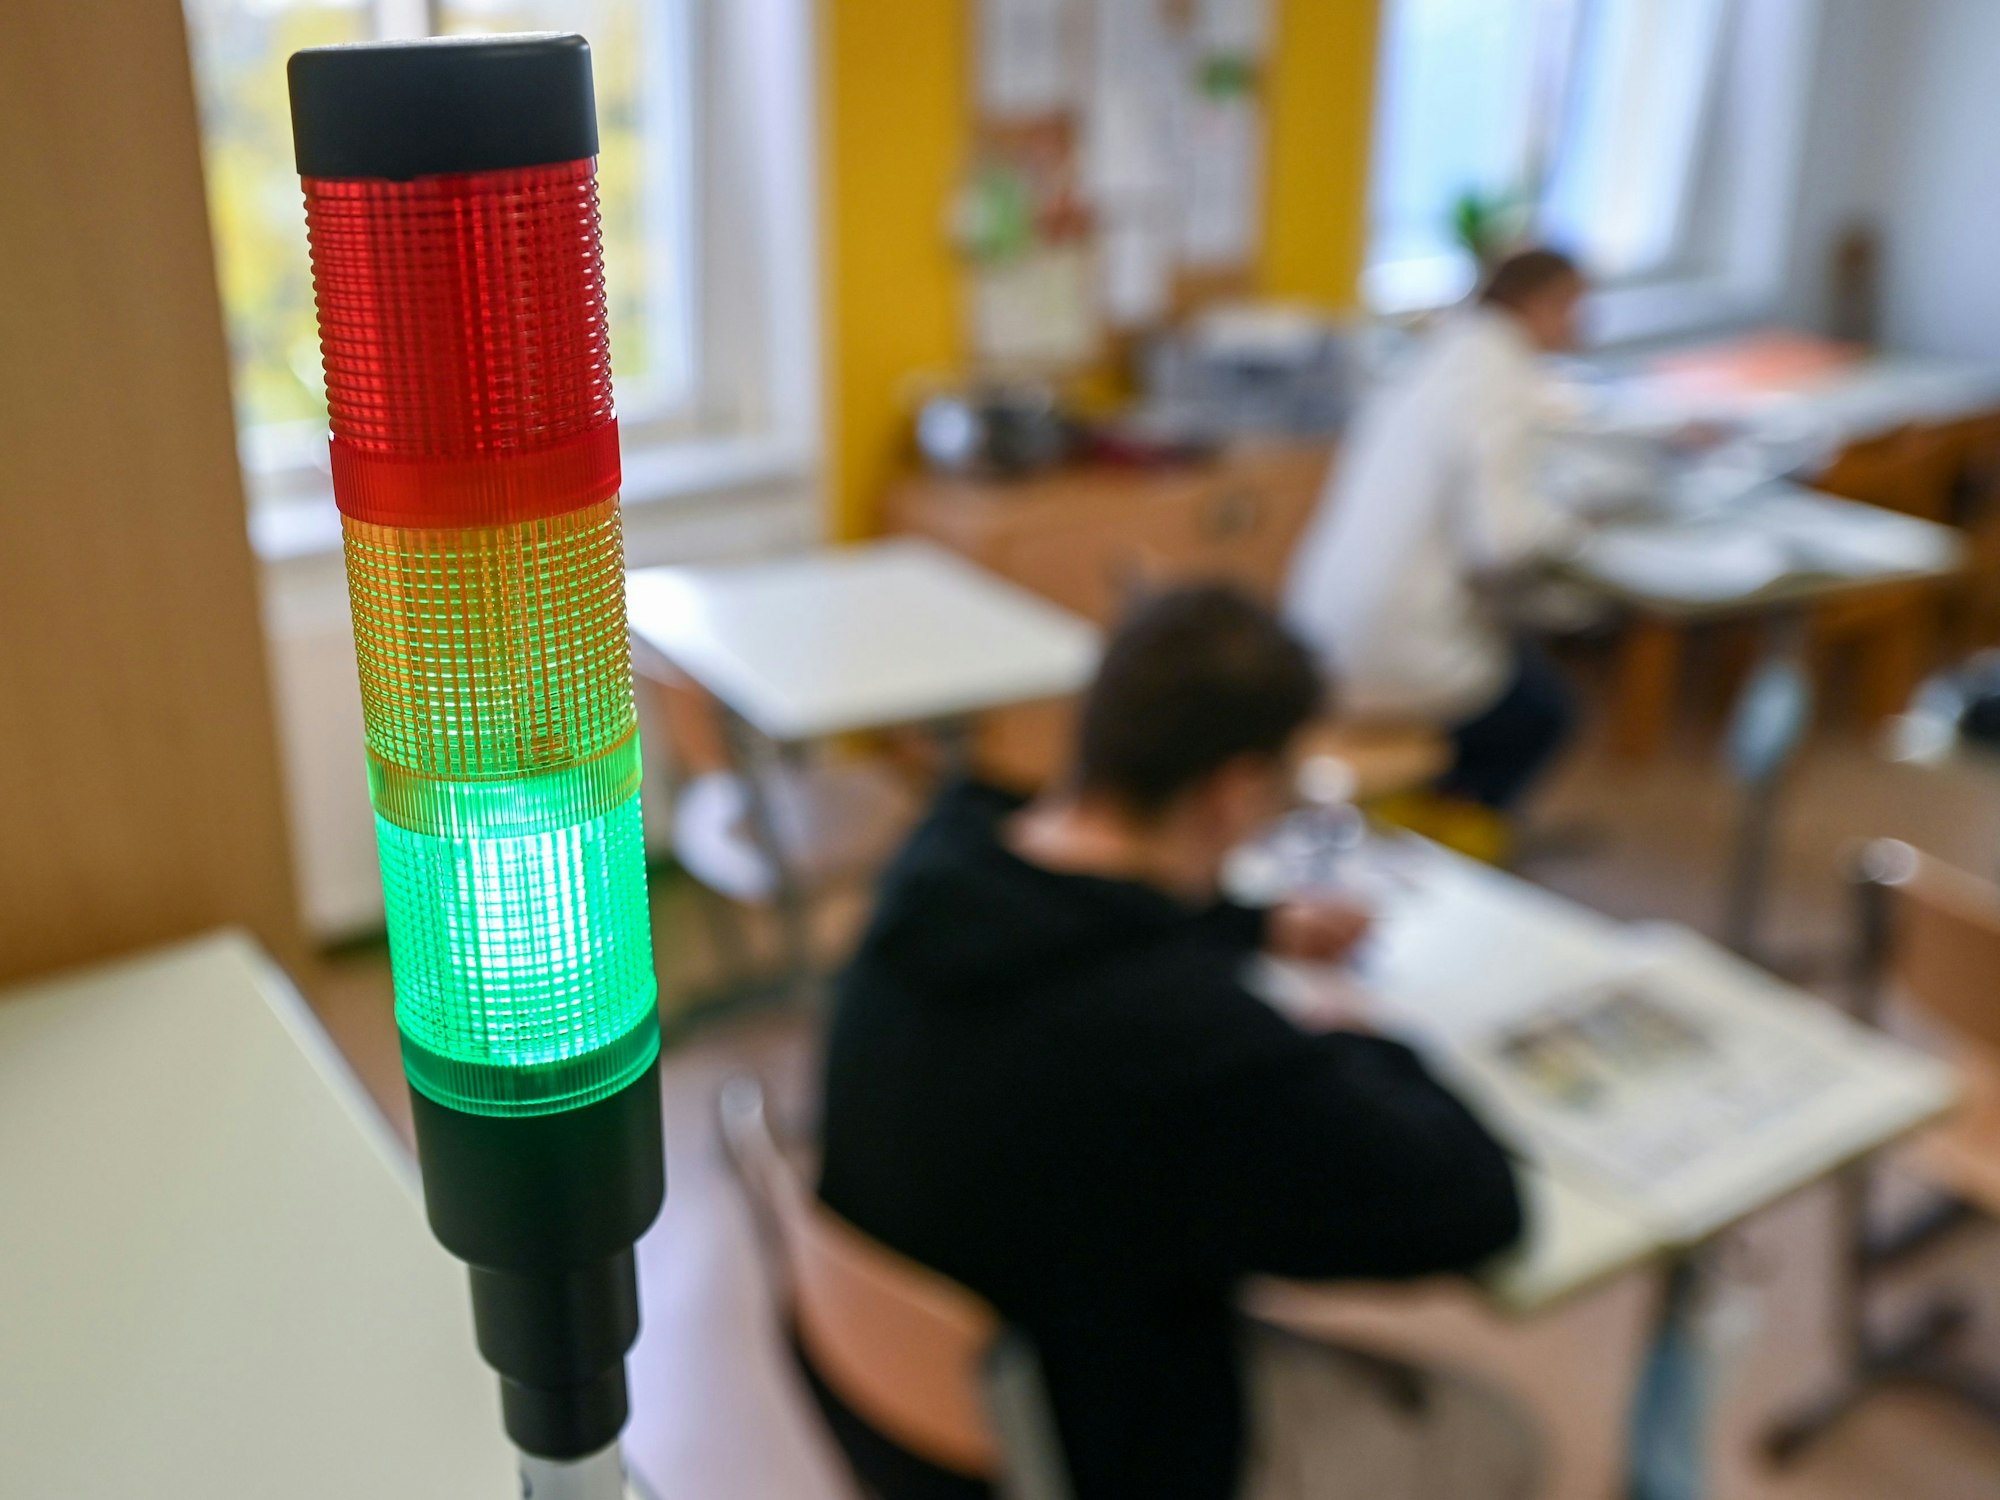 Eine sogenannte Co2-Ampel leuchtet in einem Klassenraum grün.